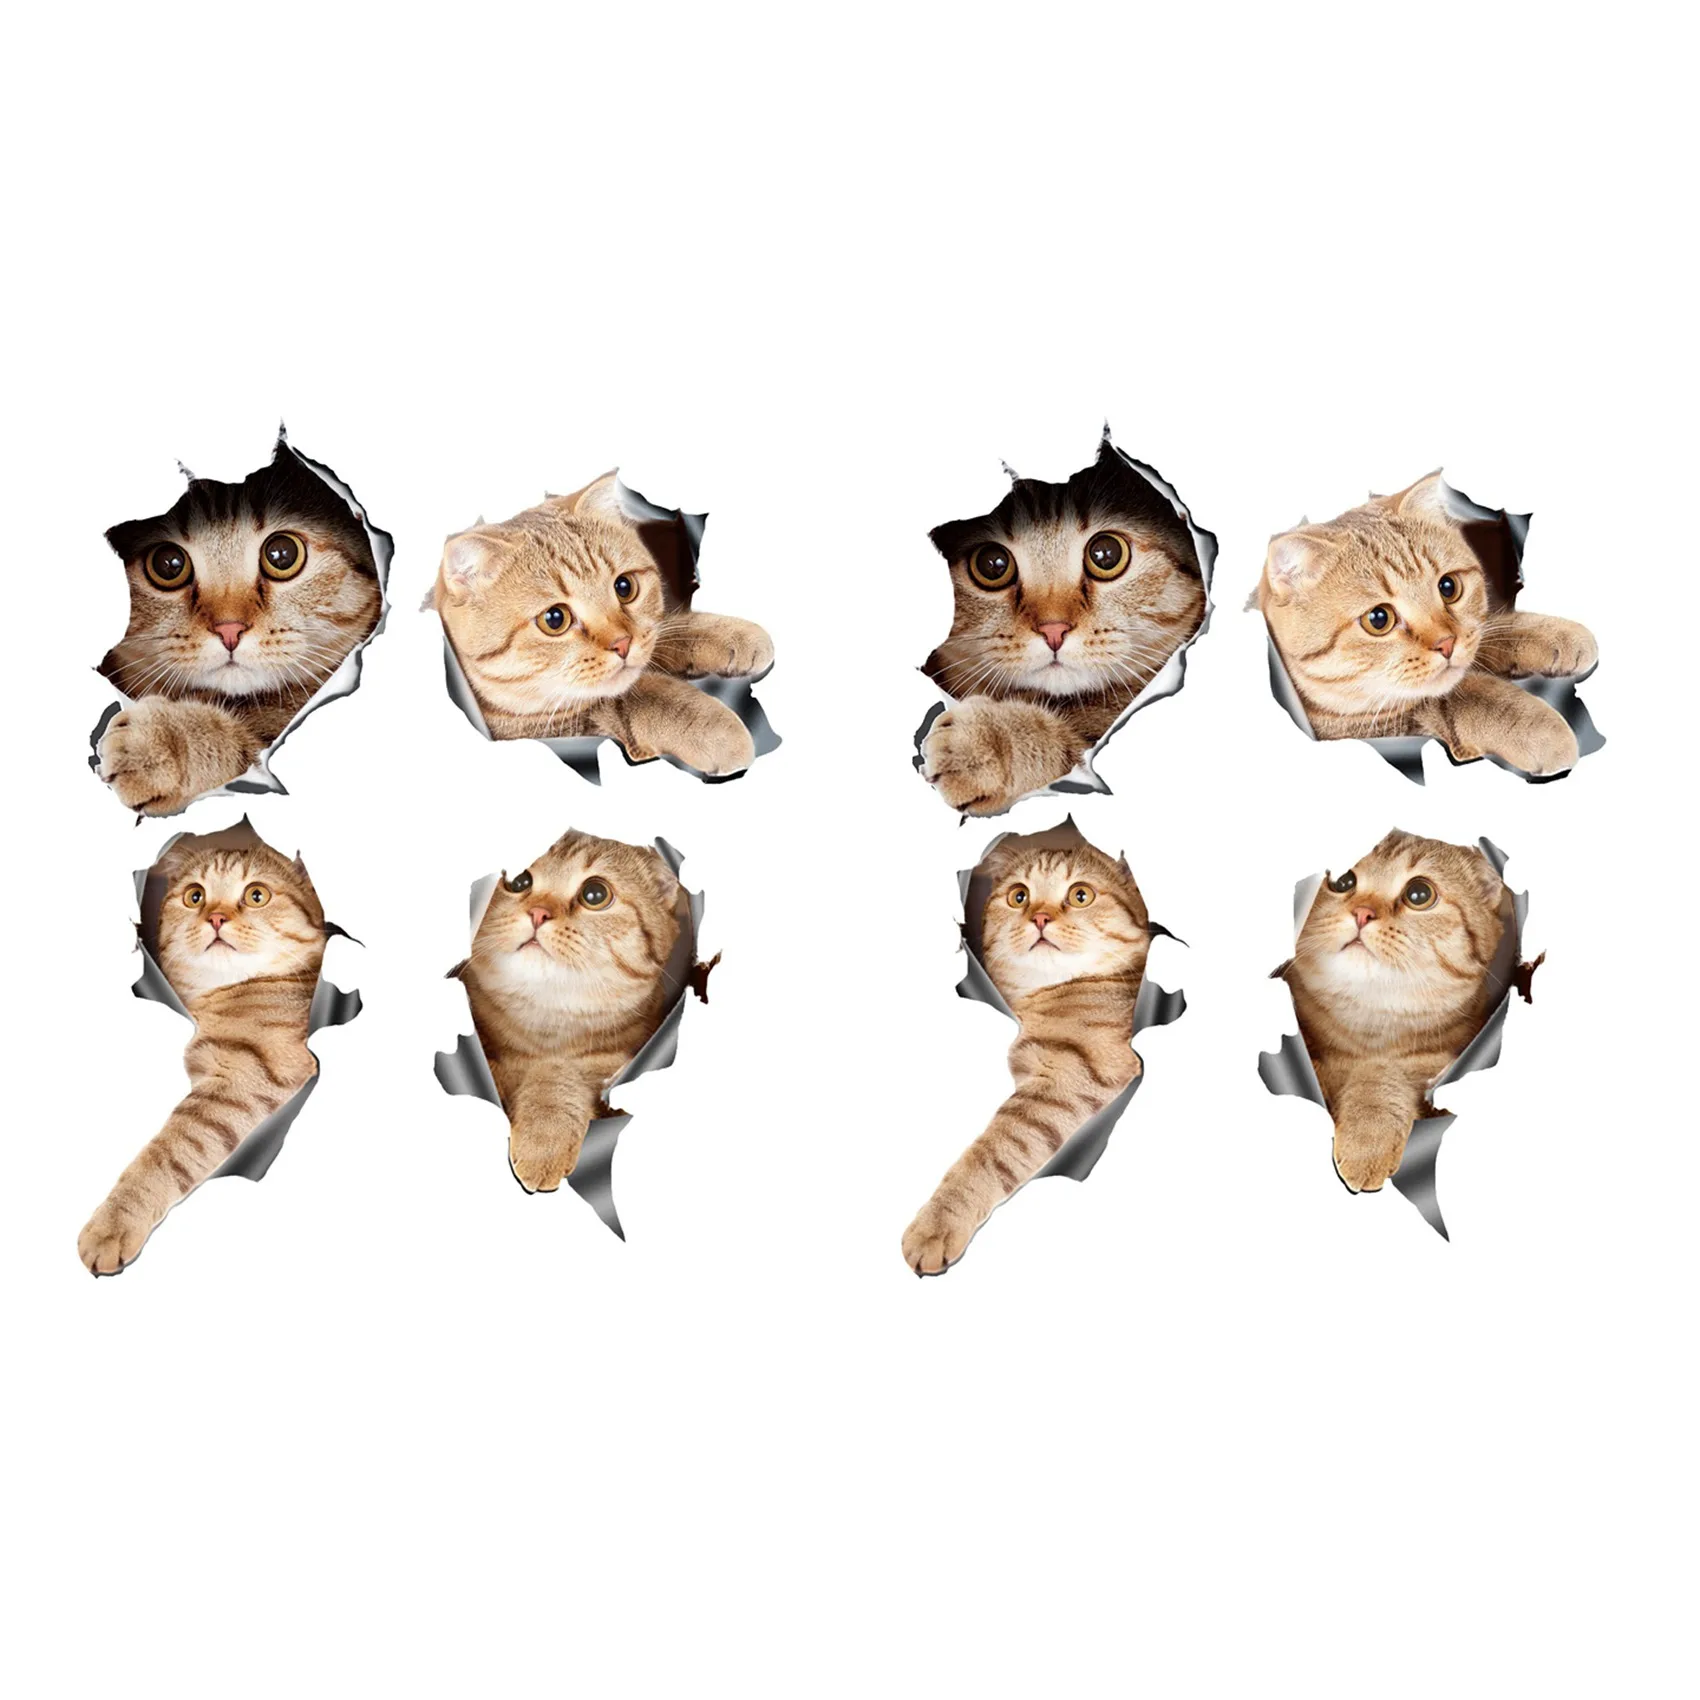 (8 шт.) 3D наклейки с кошками для автомобиля, наклейка на окно, грузовик, машину, ноутбук или iPad